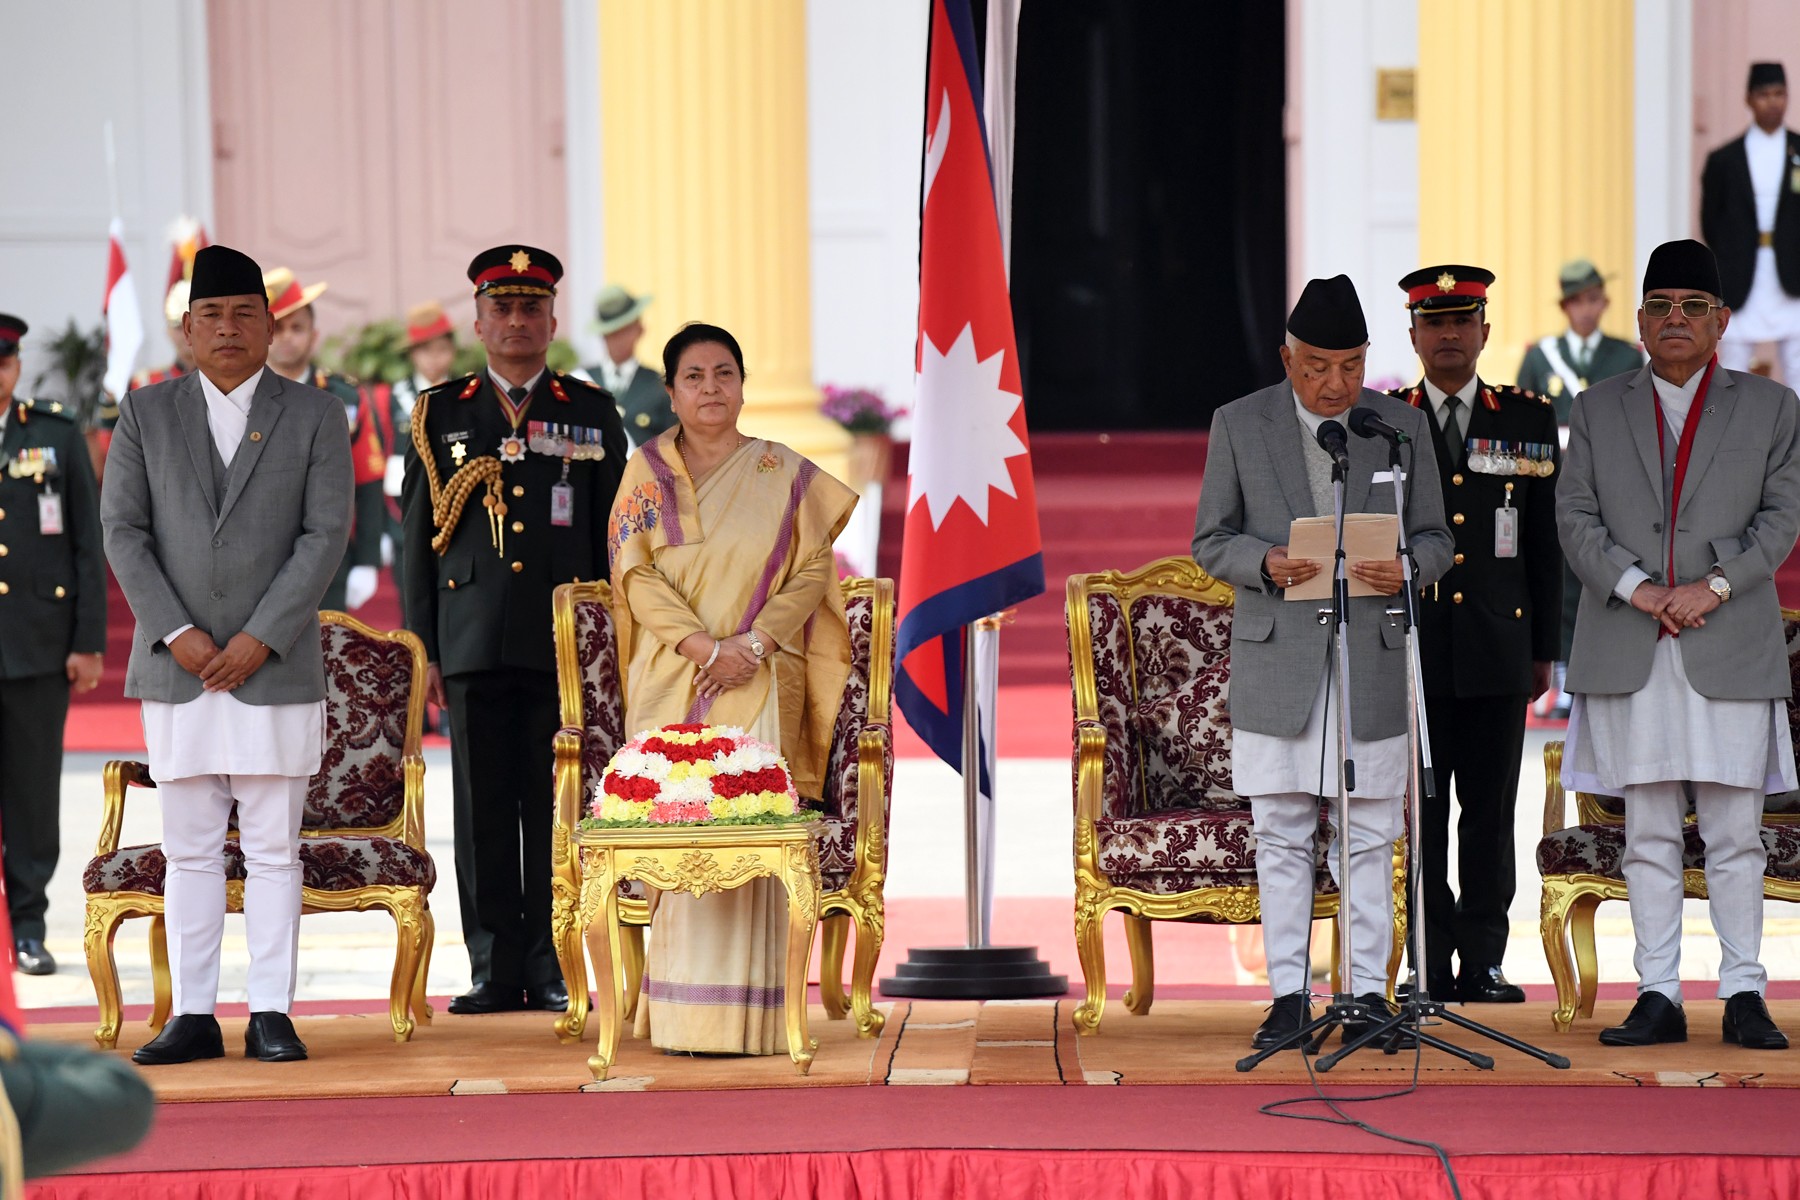 रामचन्द्र पौडेलद्वारा राष्ट्रपति पदको शपथ ग्रहण